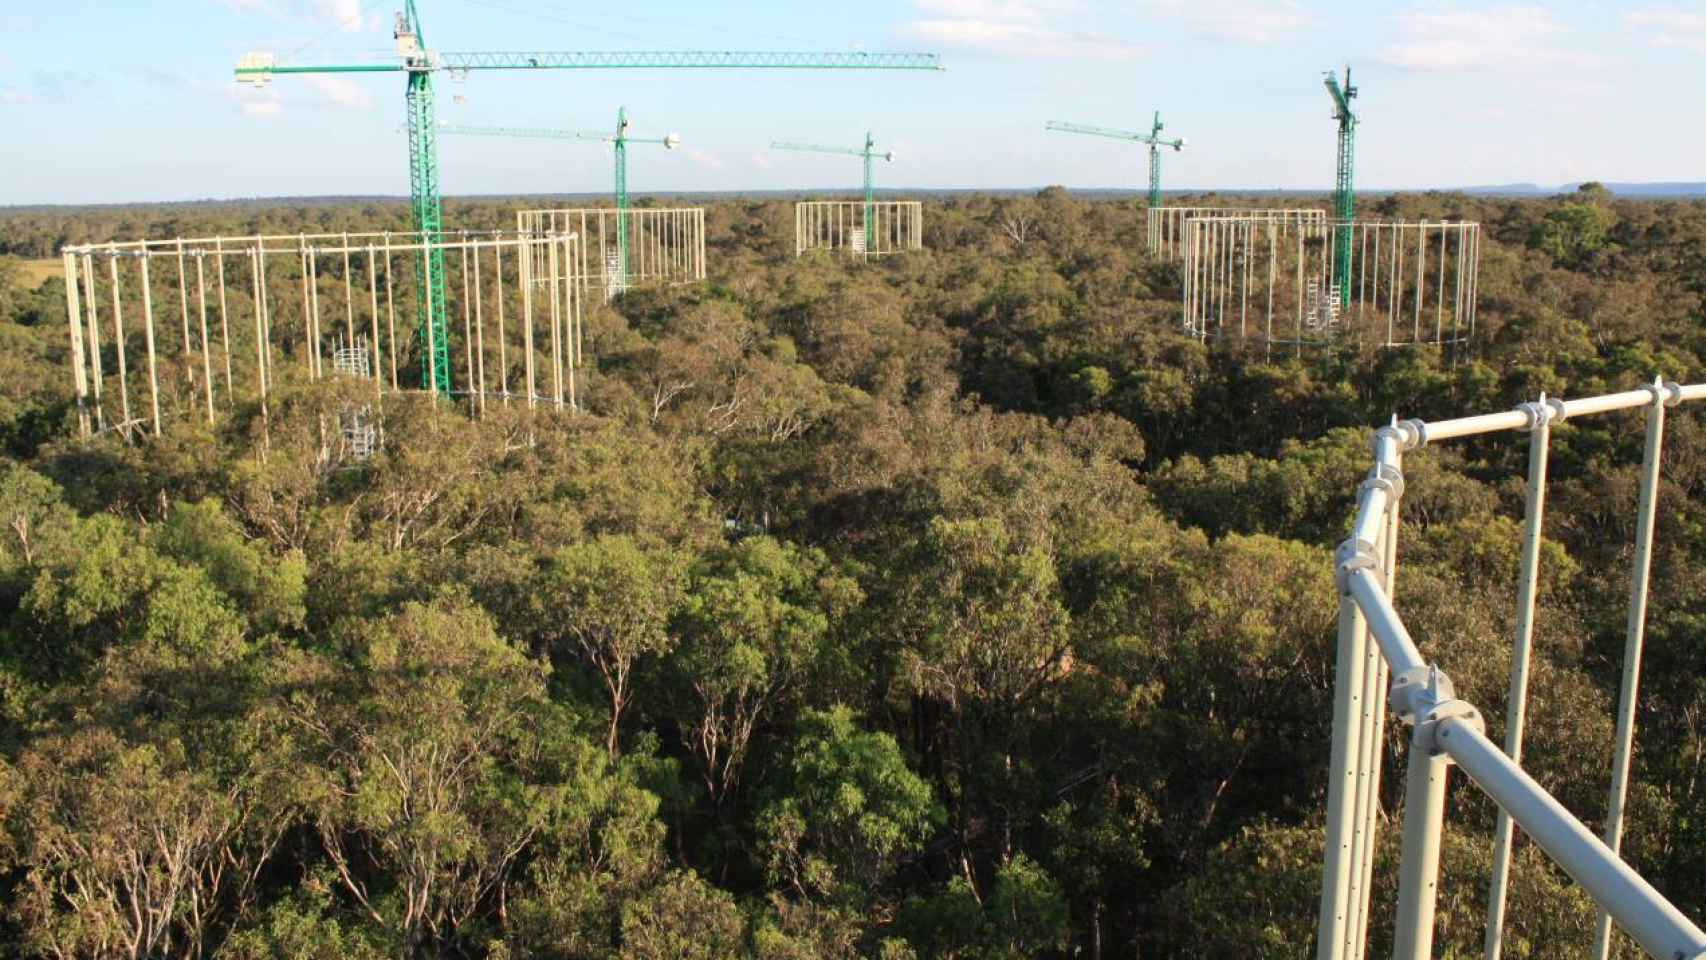 Vista aérea del experimento realizado en el bosque australiano.